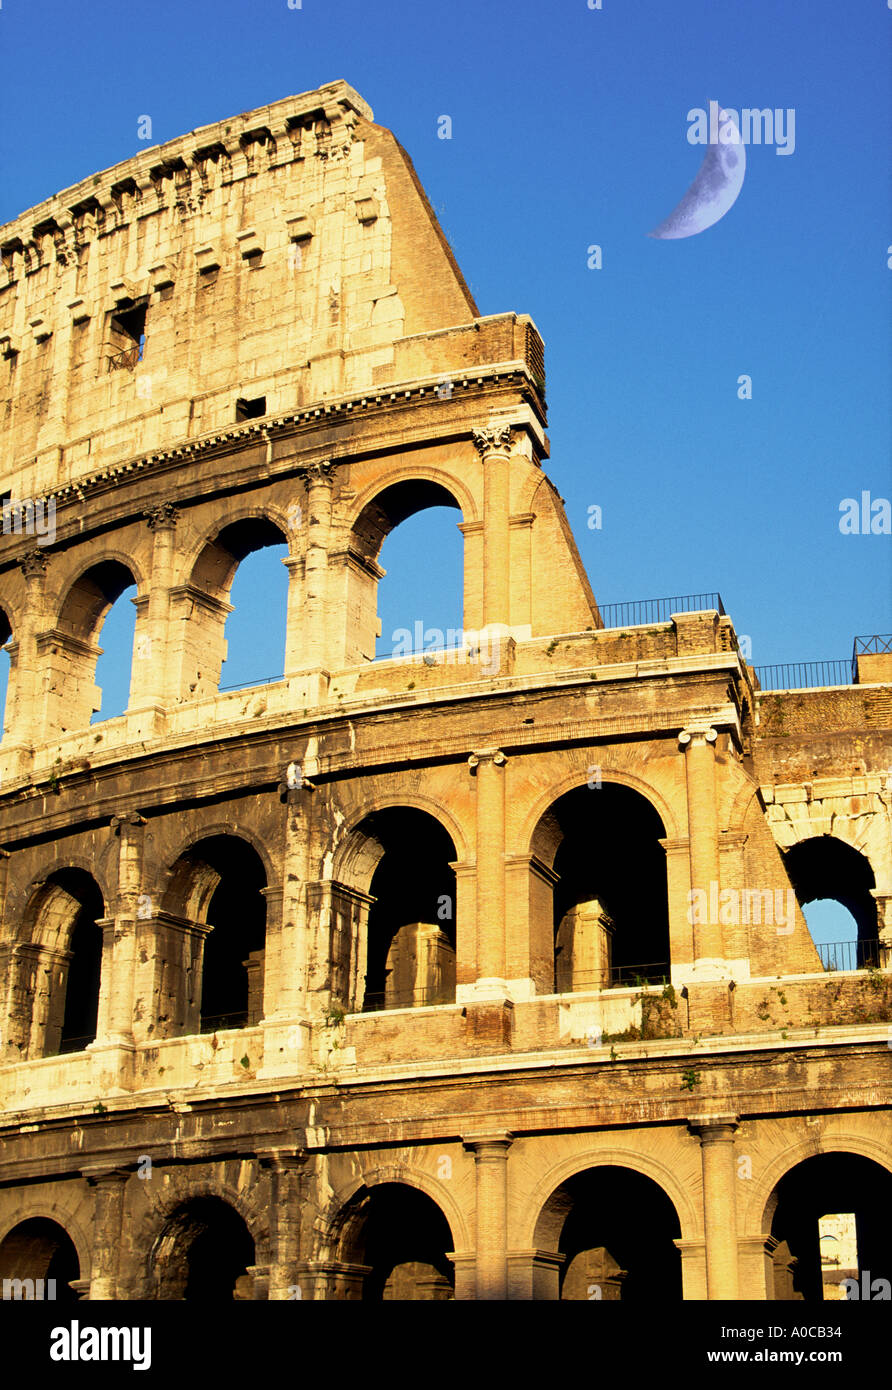 Colosseo Roma Italia con cresent moon Foto Stock